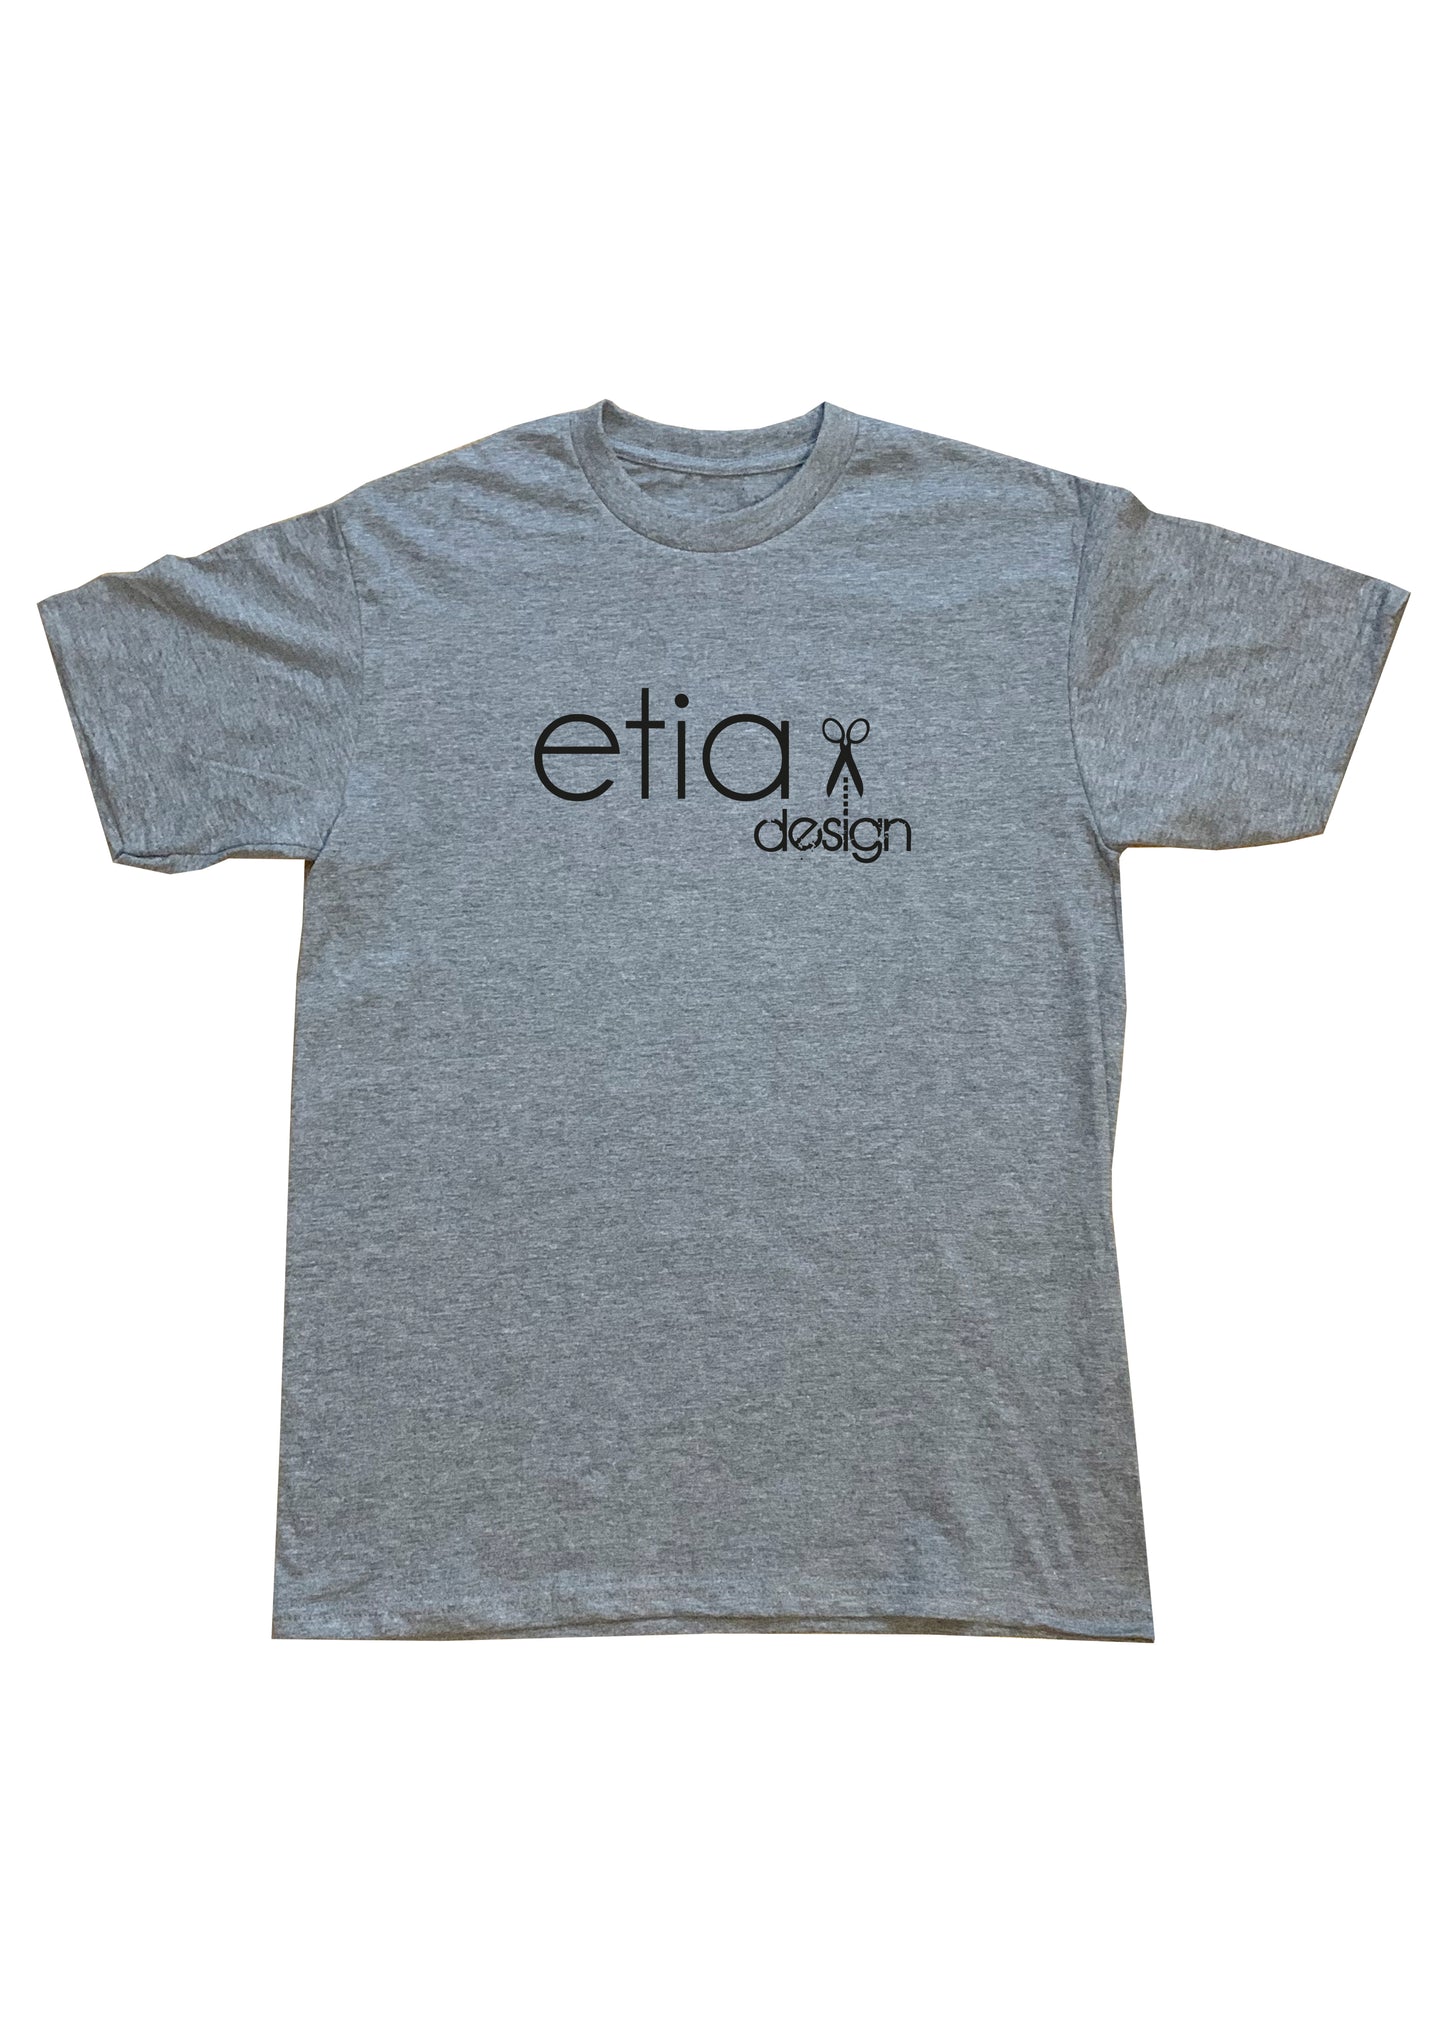 Etia Design Original Logo T-shirt